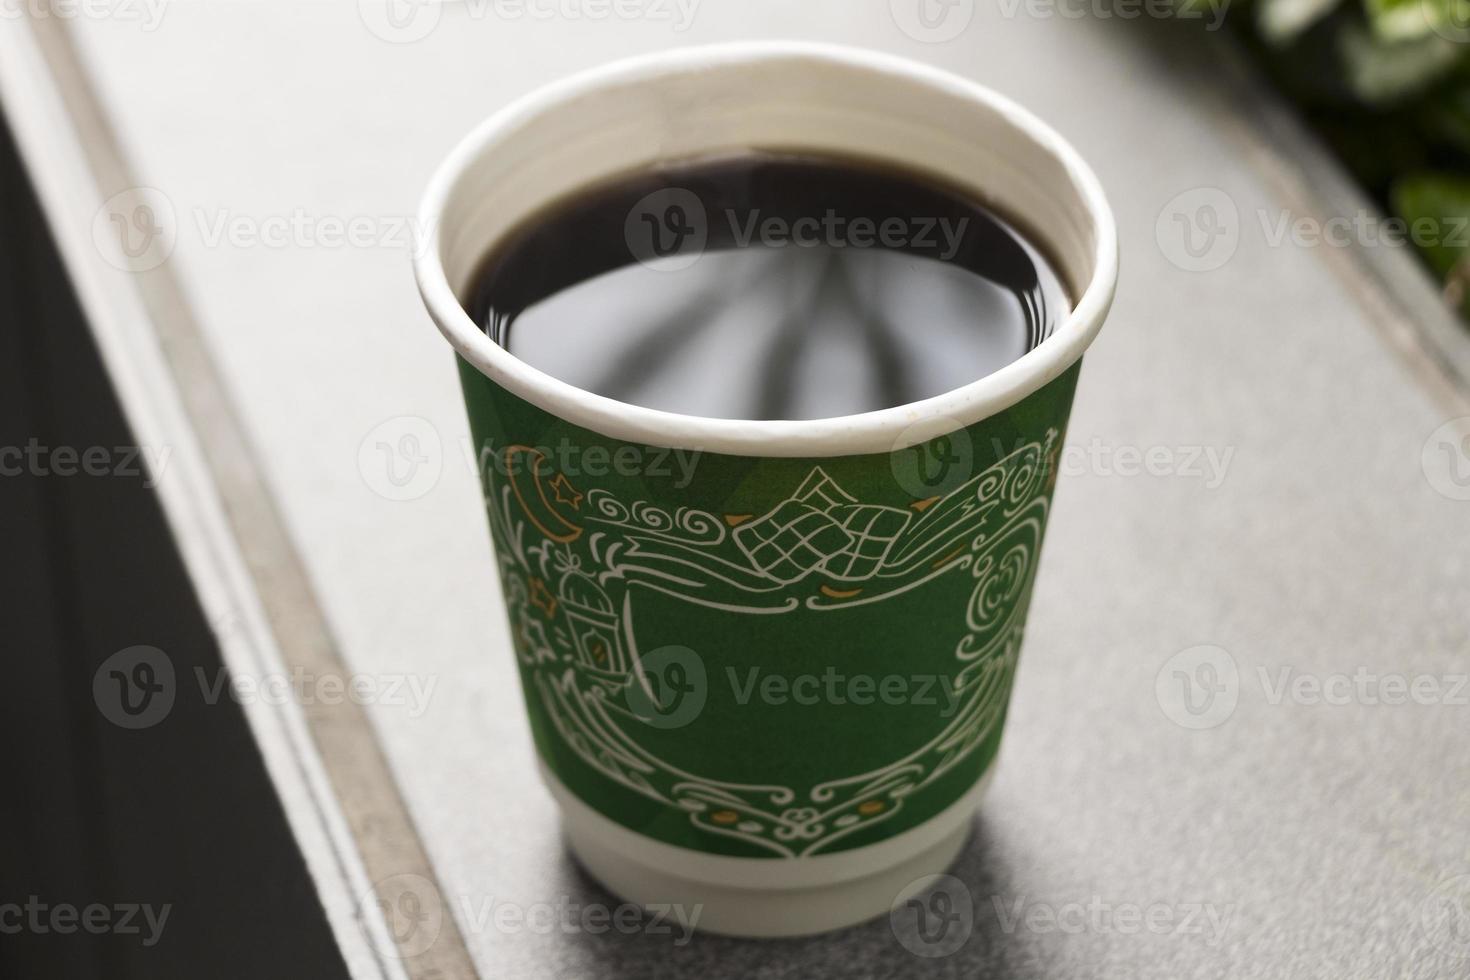 schwarzer kaffee in einem grünen papierbecher wie mc donalds. foto